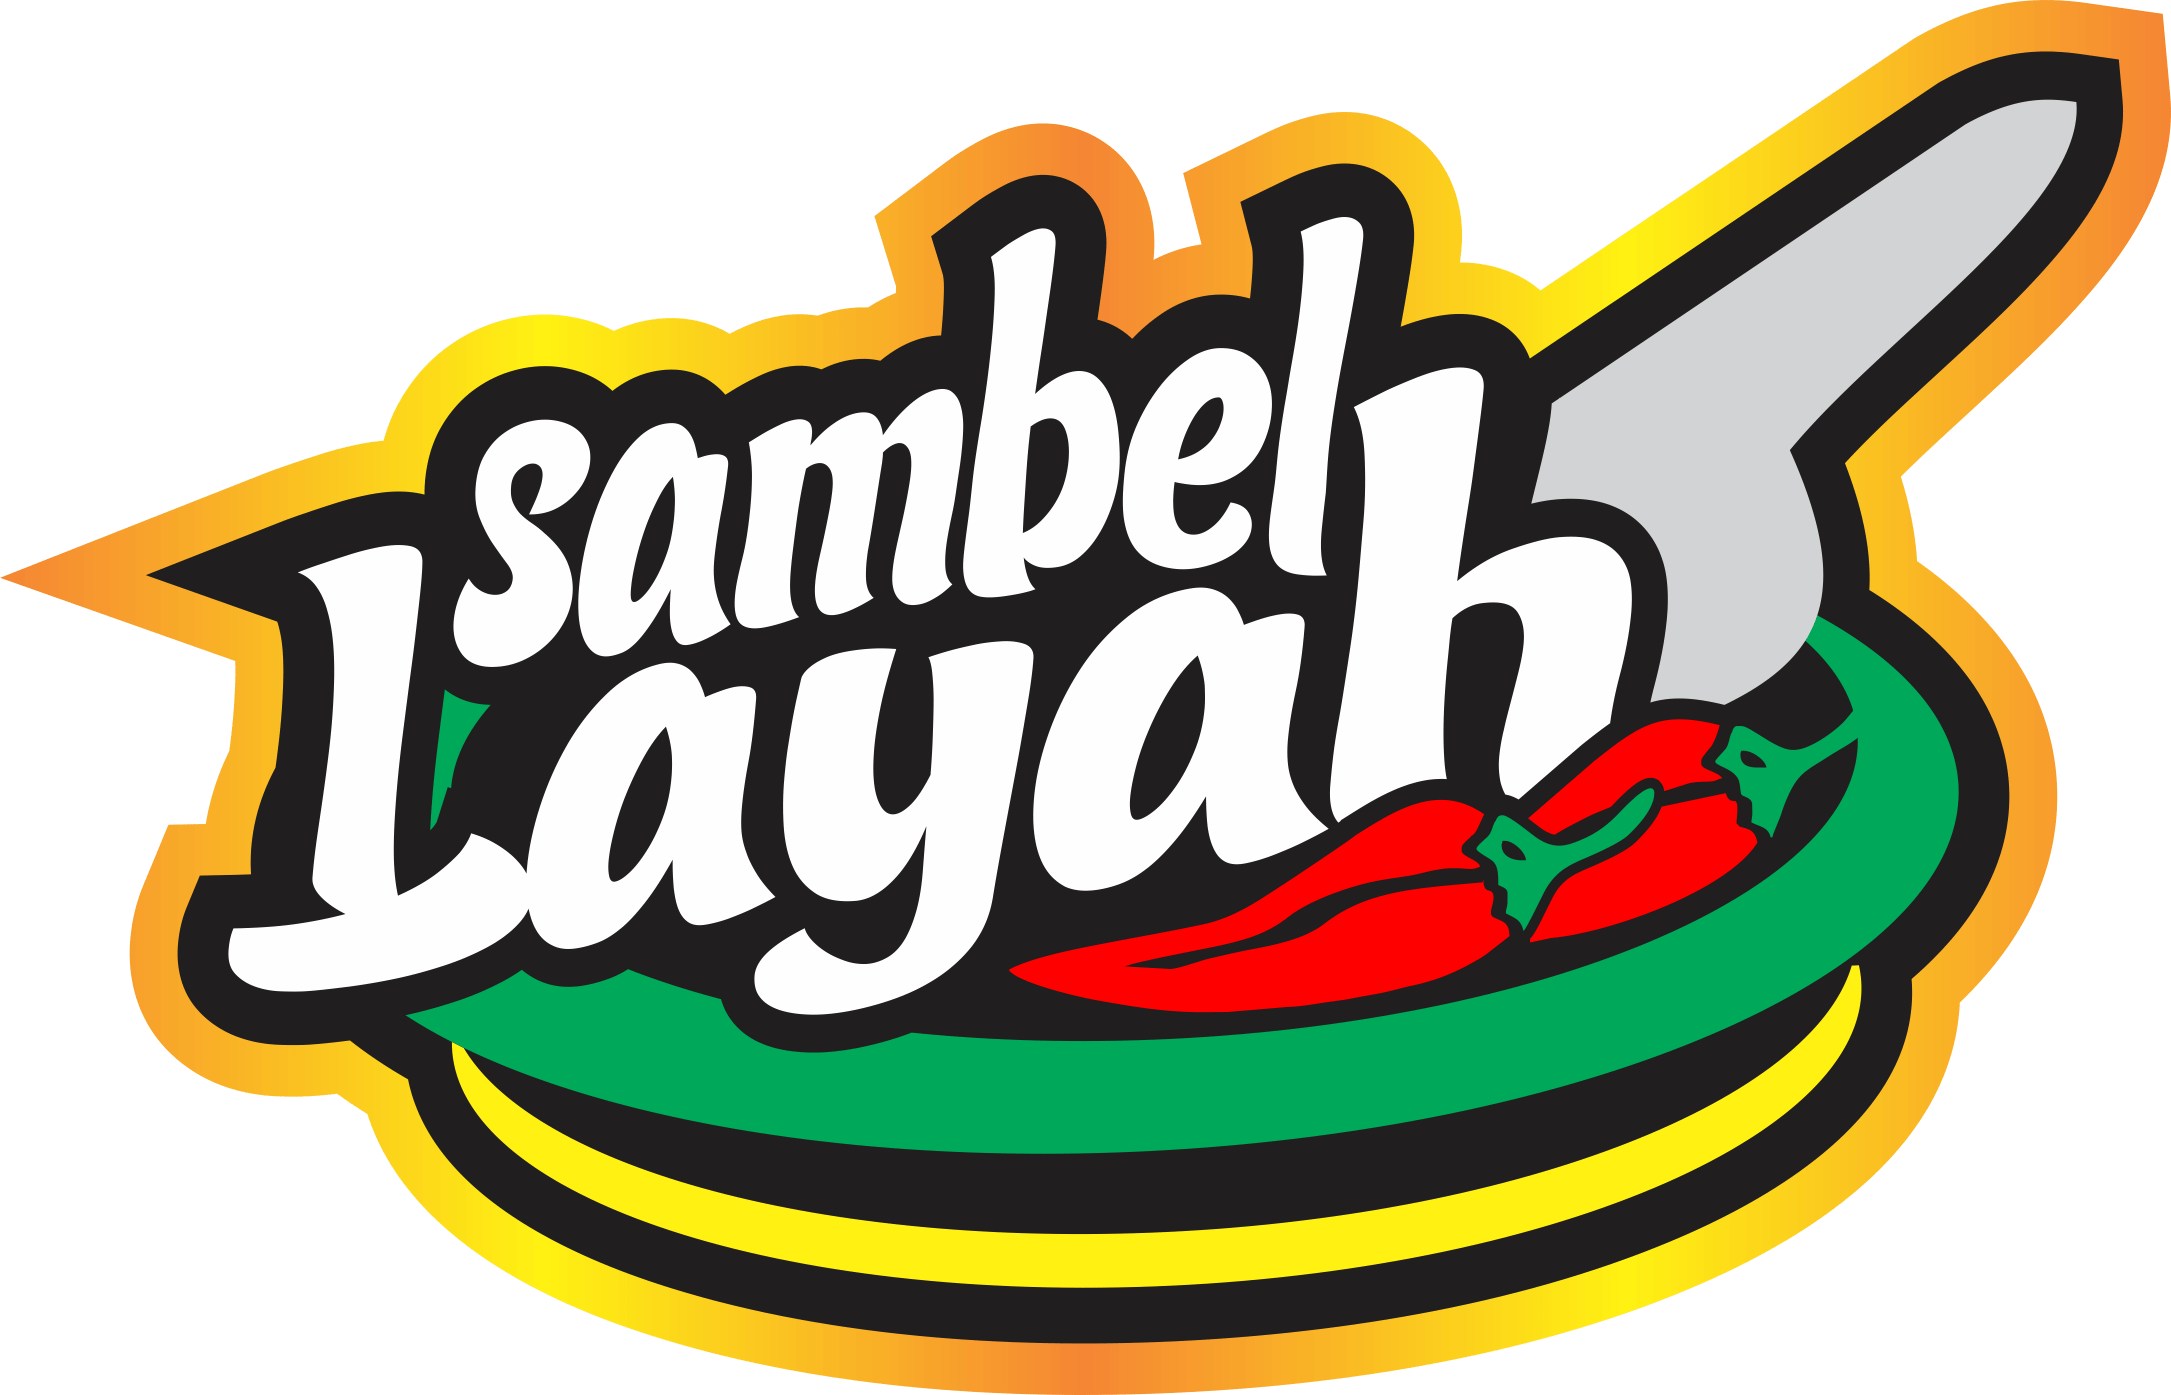 logo sambel layah